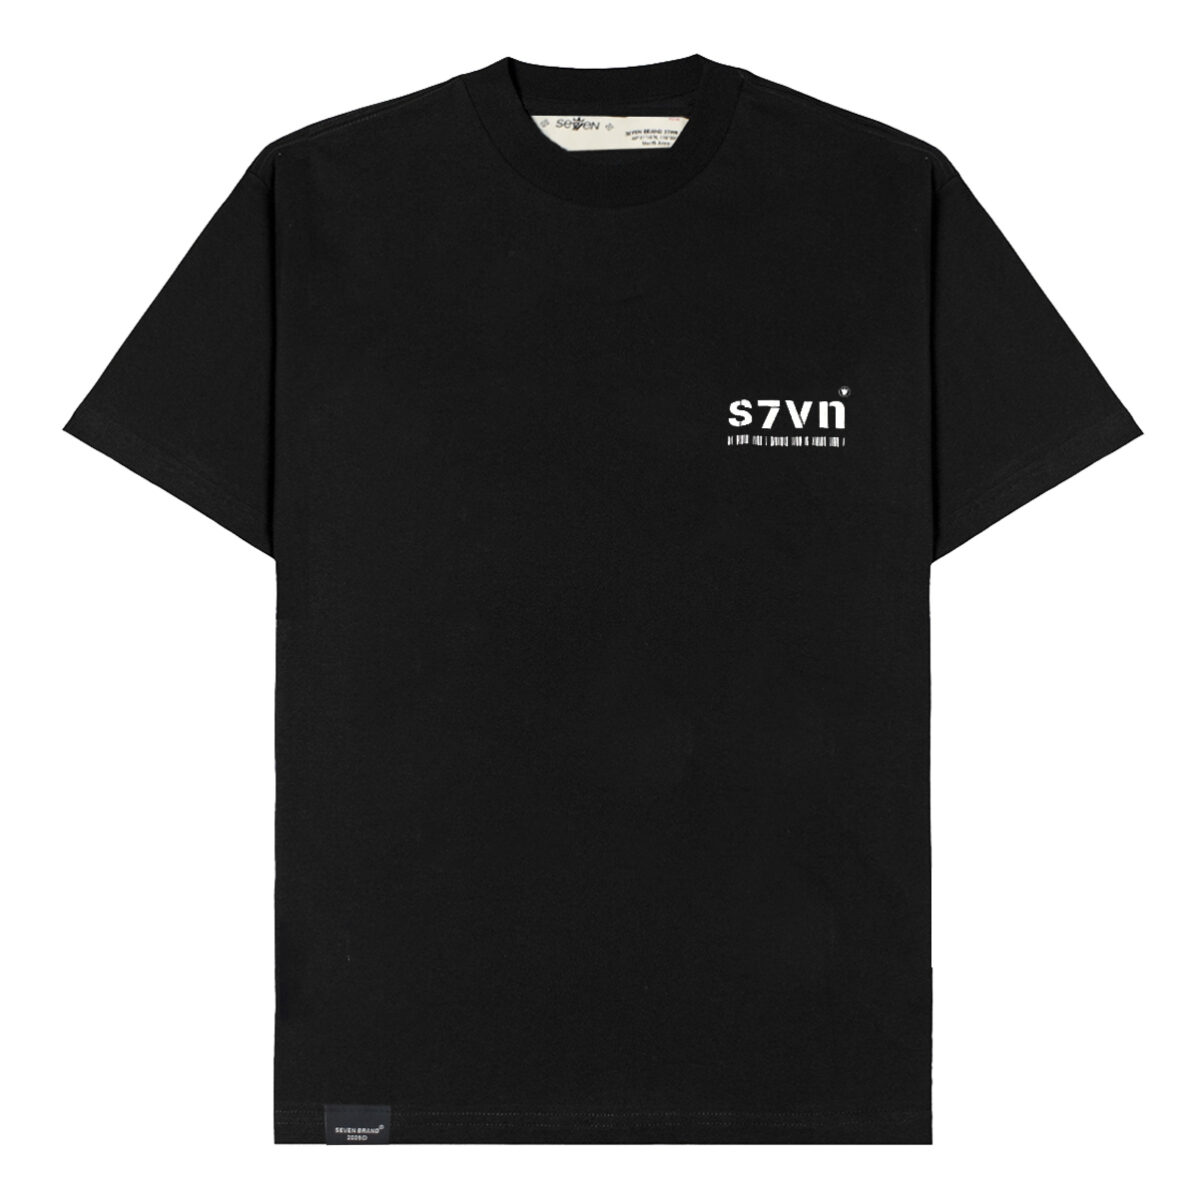 Camiseta Seven Oversized S7VN (Black)